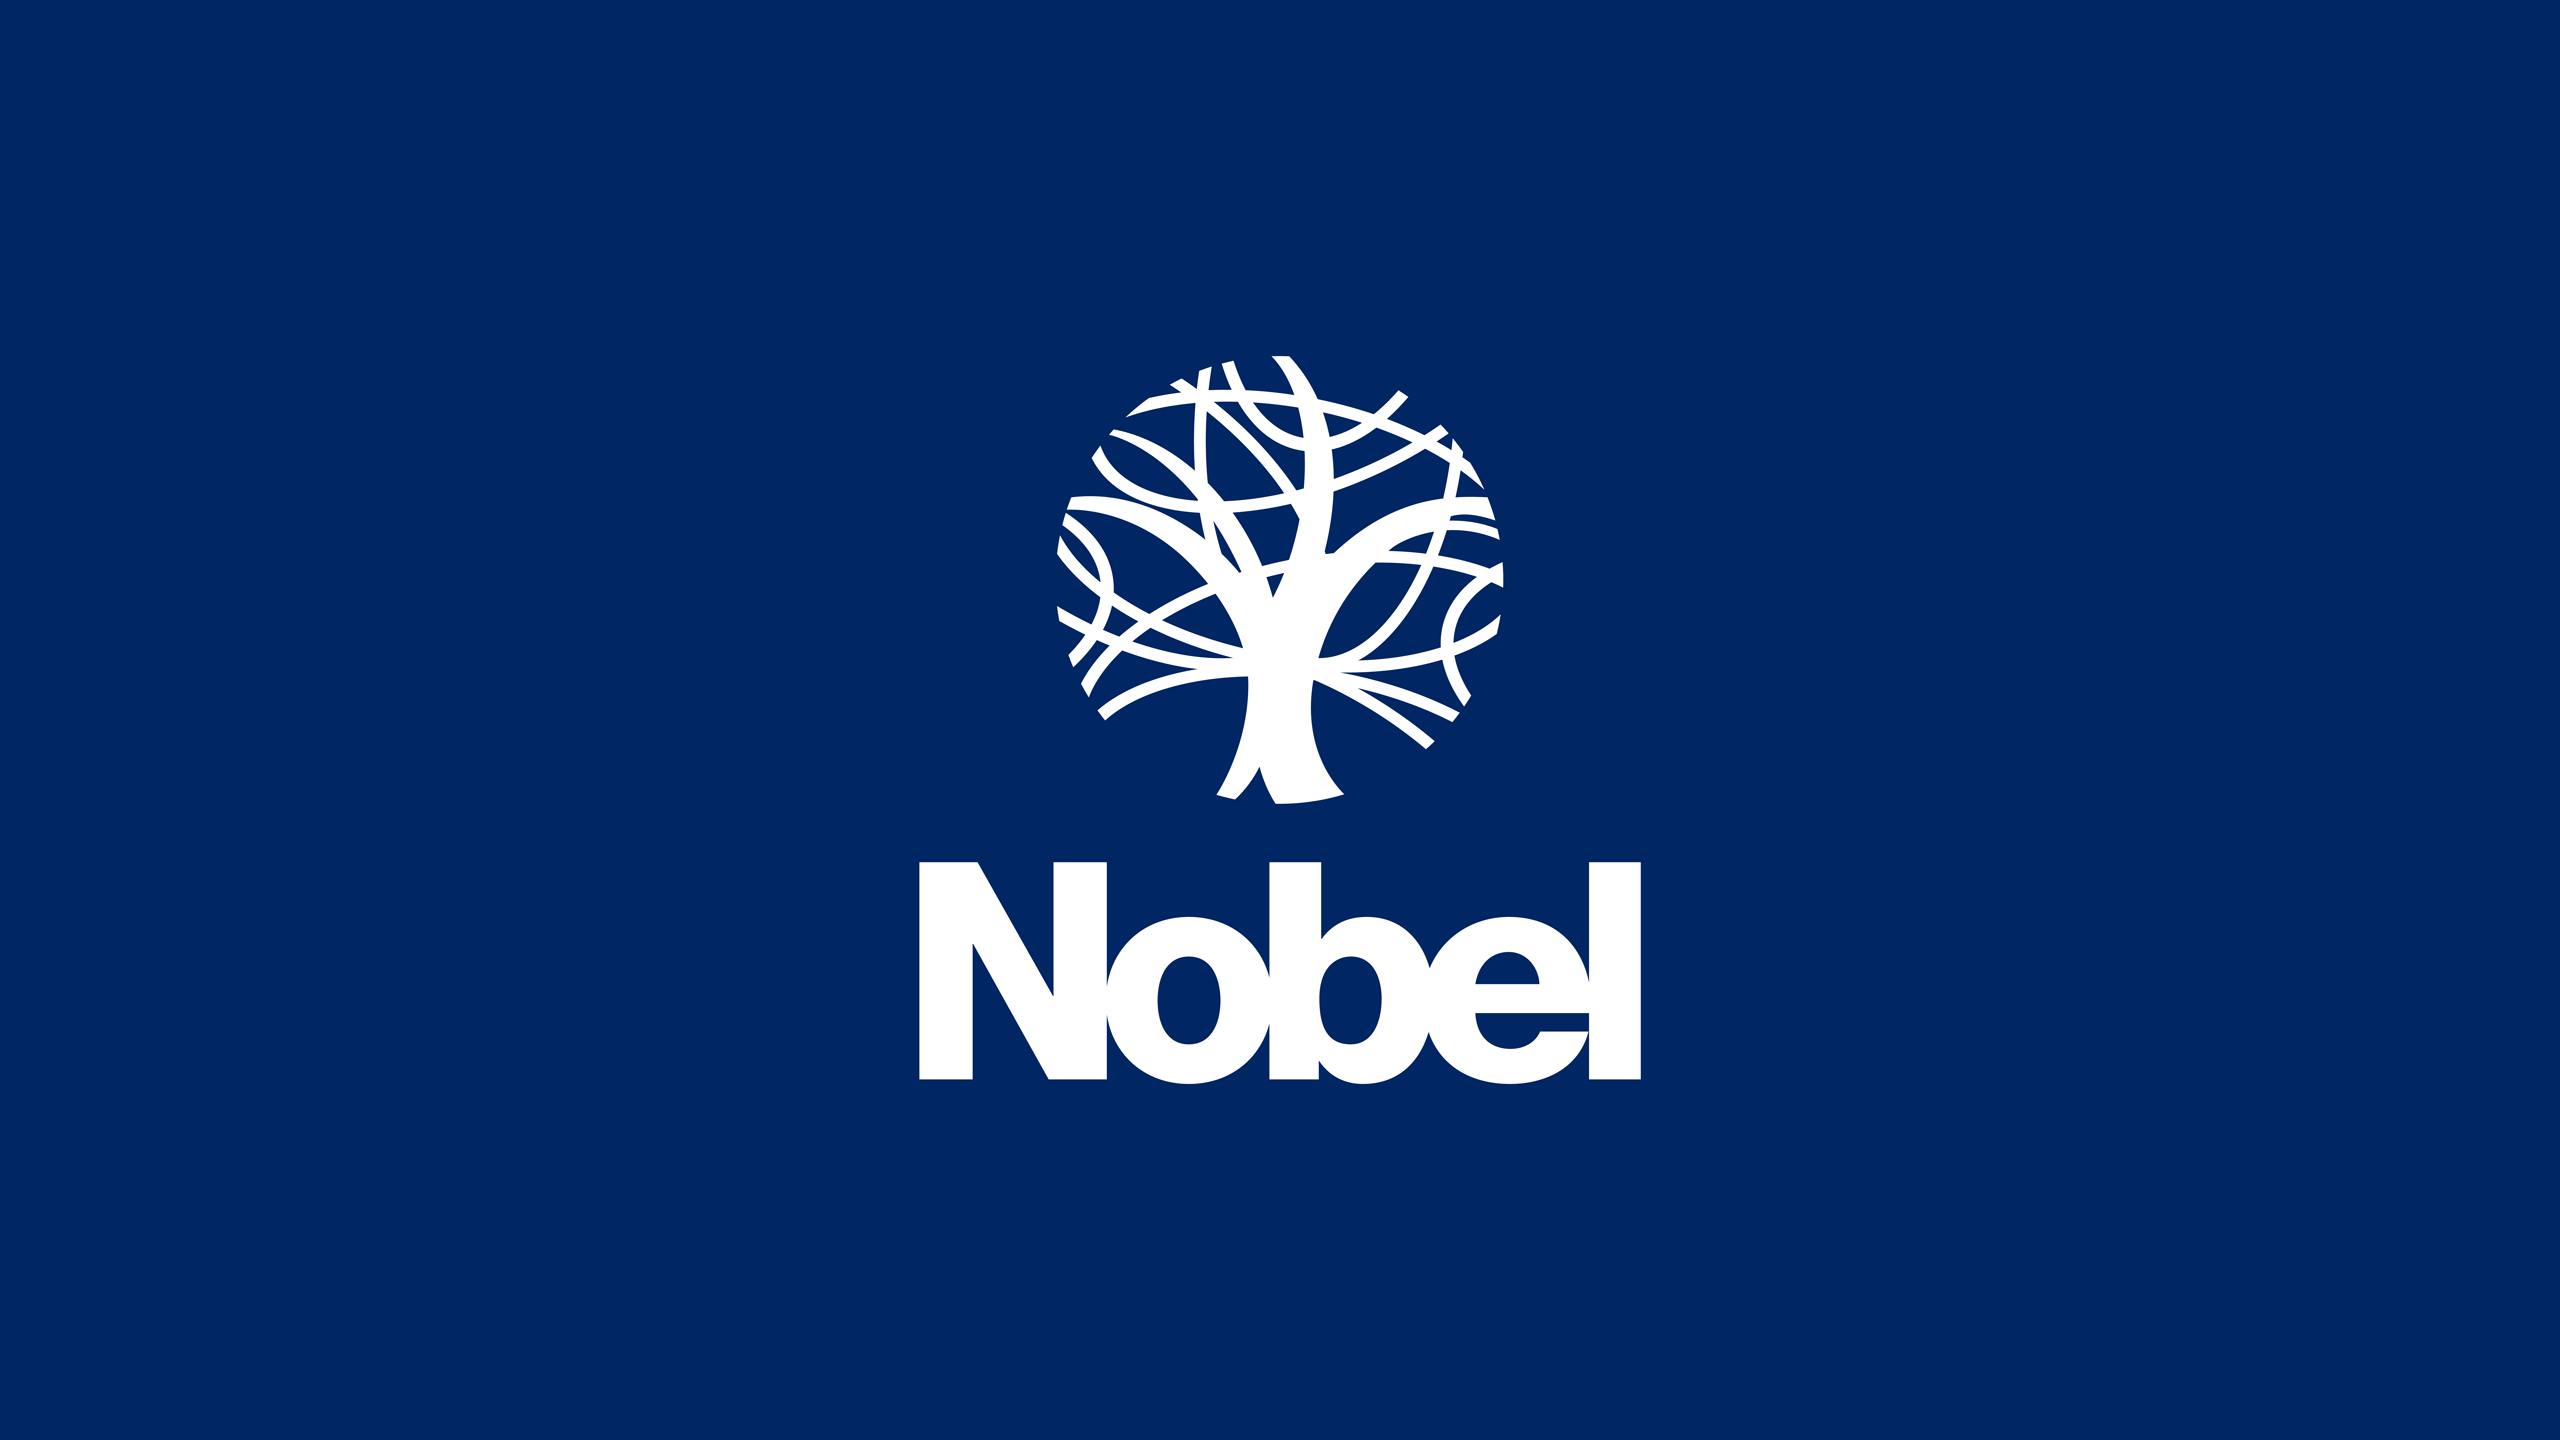 Nobel Logo - School website design | logo design & branding | The Nobel School ...